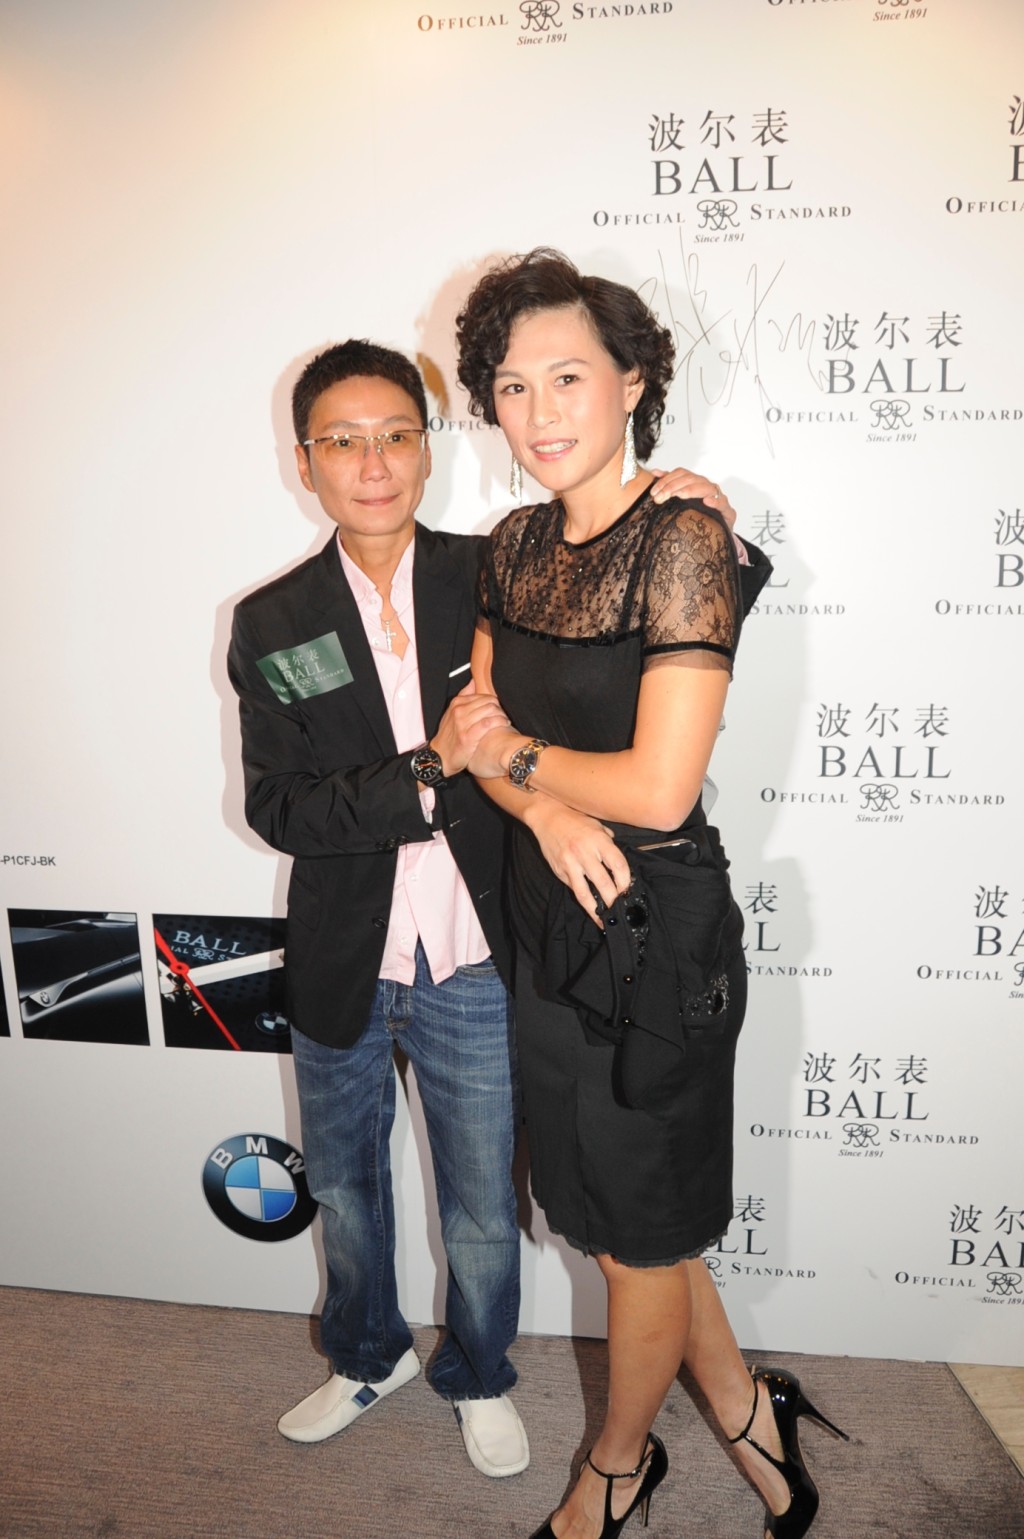 赵式芝在2012年懒理父母反对，与杨如芯于法国秘密结婚。